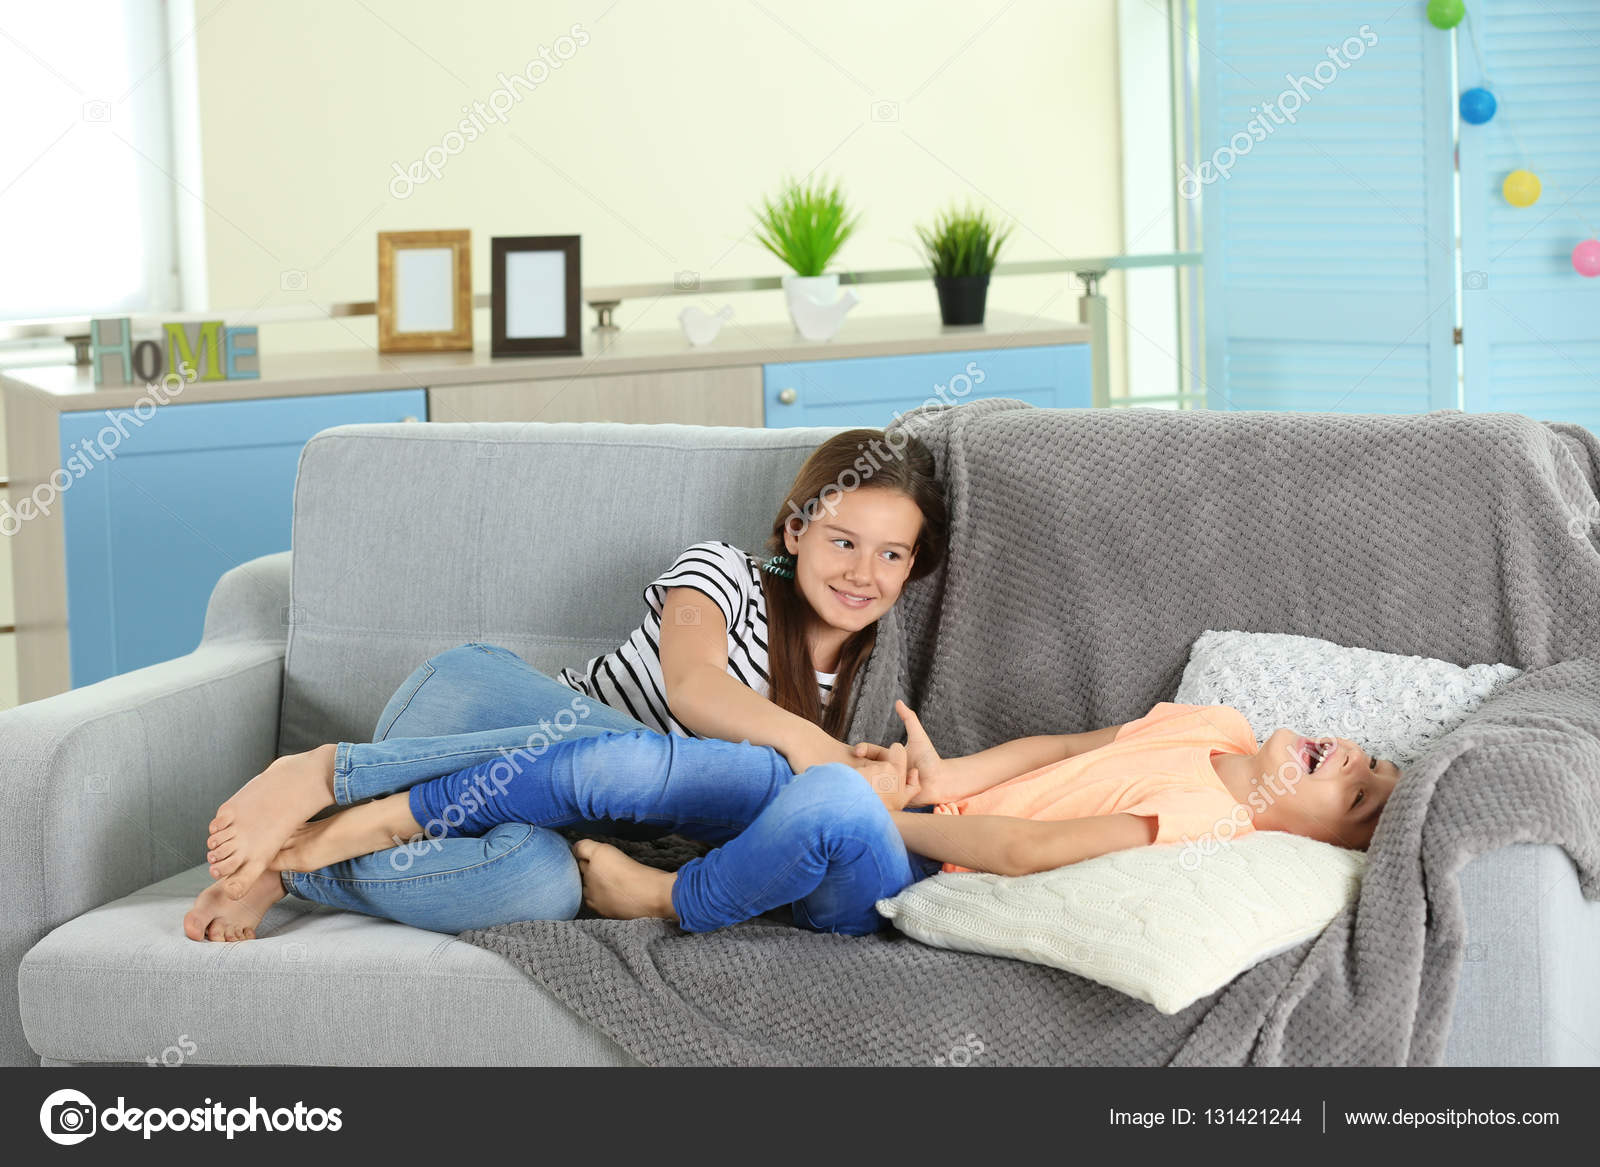 Сестра с голой грудью сидит на диване фото